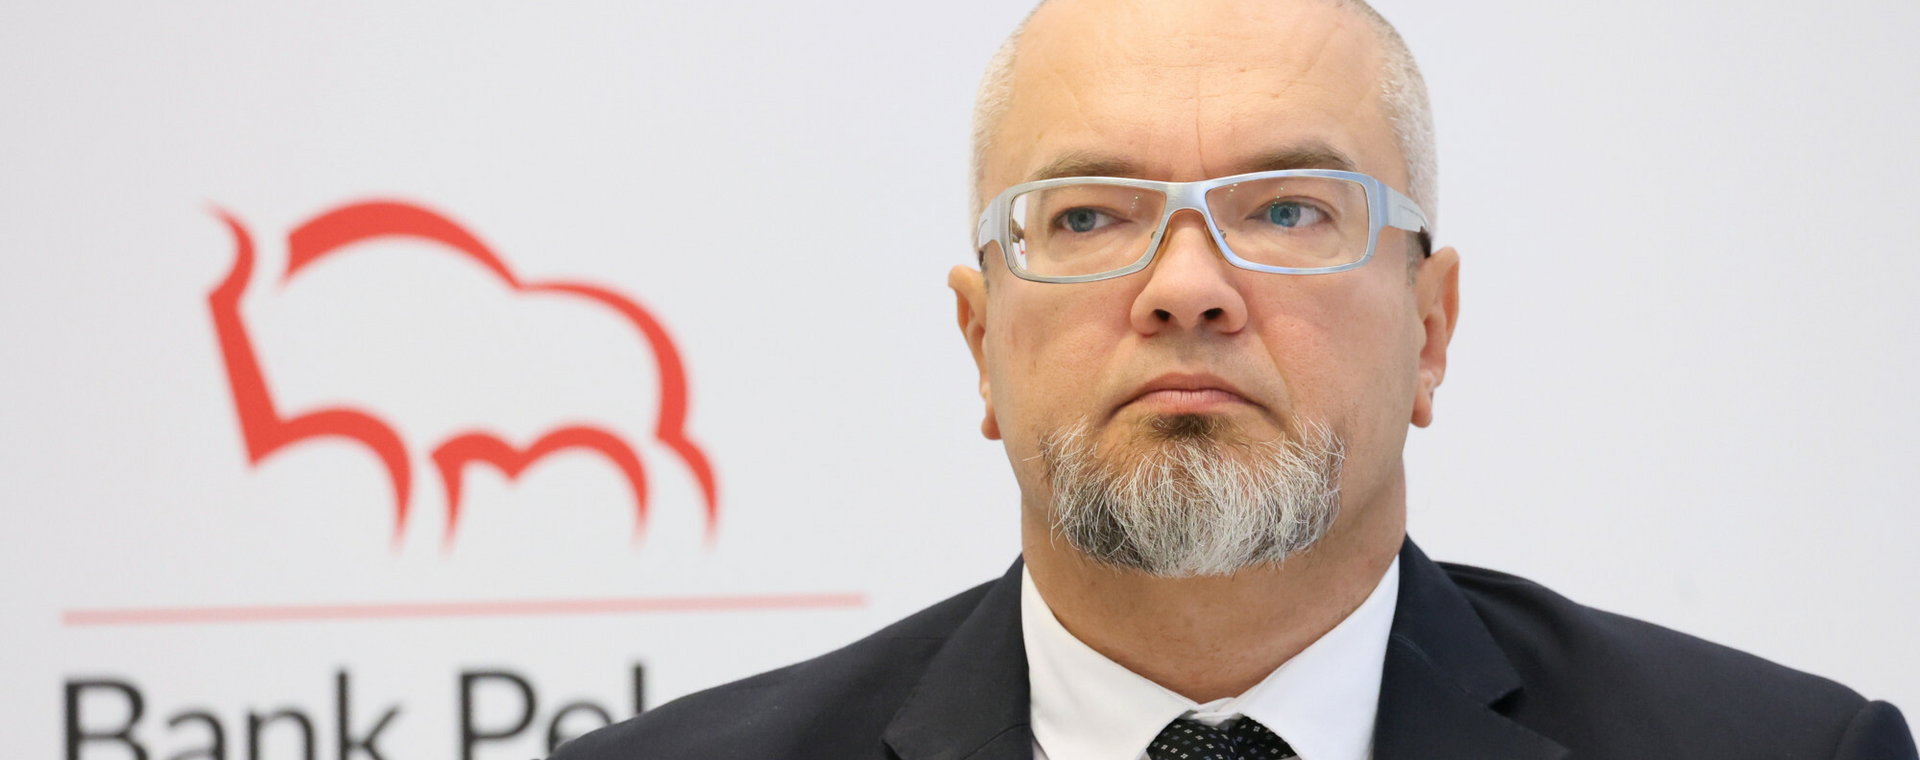 Główny analityk Banku Pekao komentuje m.in. kwestie inflacji w Polsce i KPO.